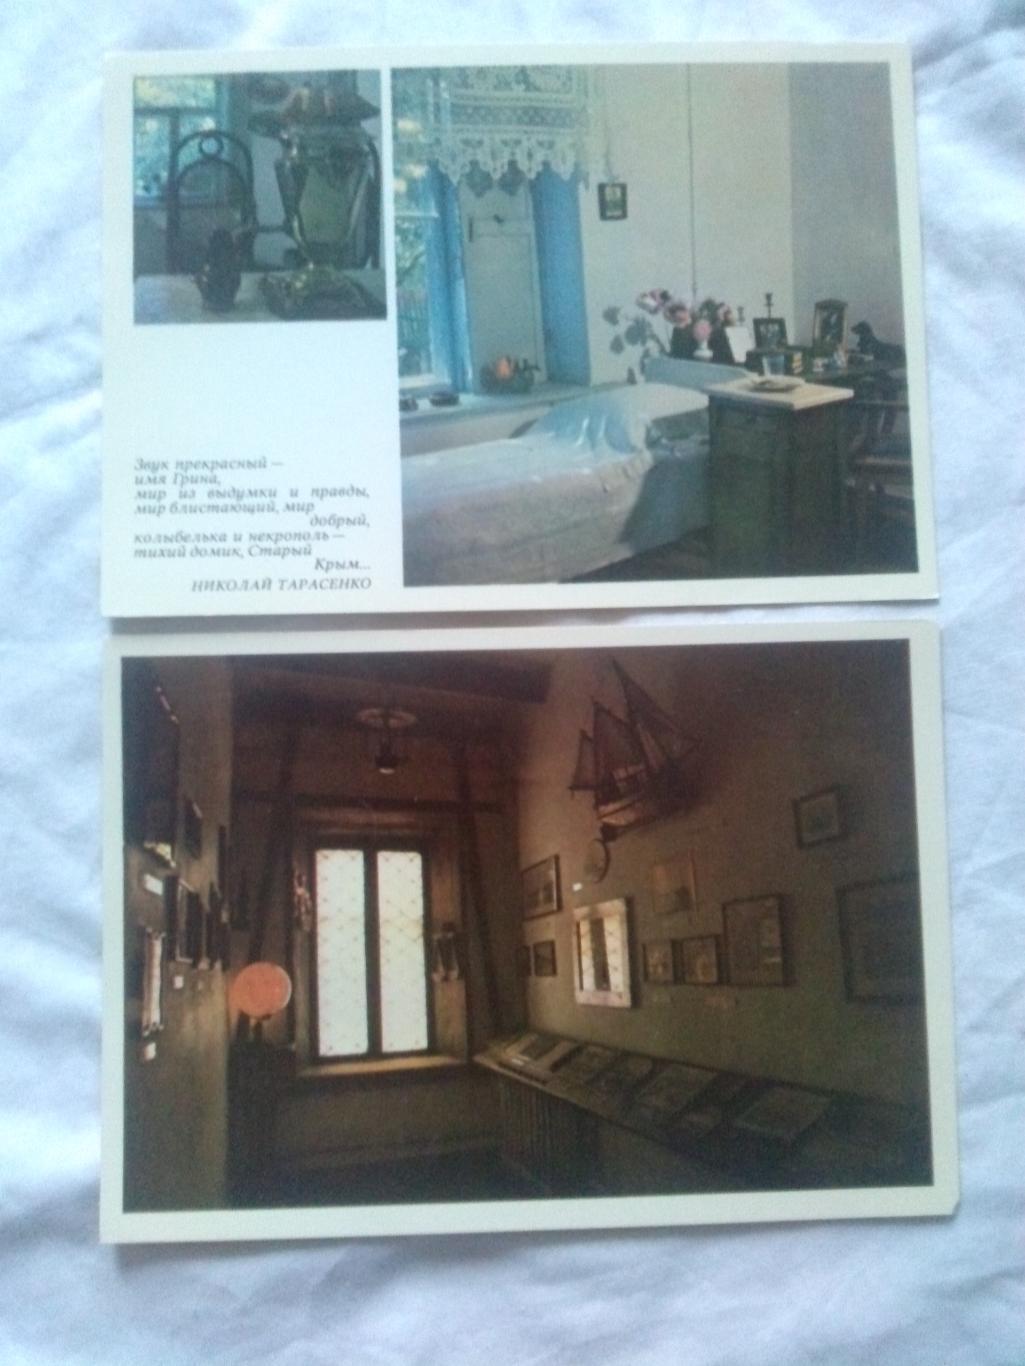 А.С. Грин - поэт мечты , романтики и моря 1981 г. полный набор - 8 открыток 3